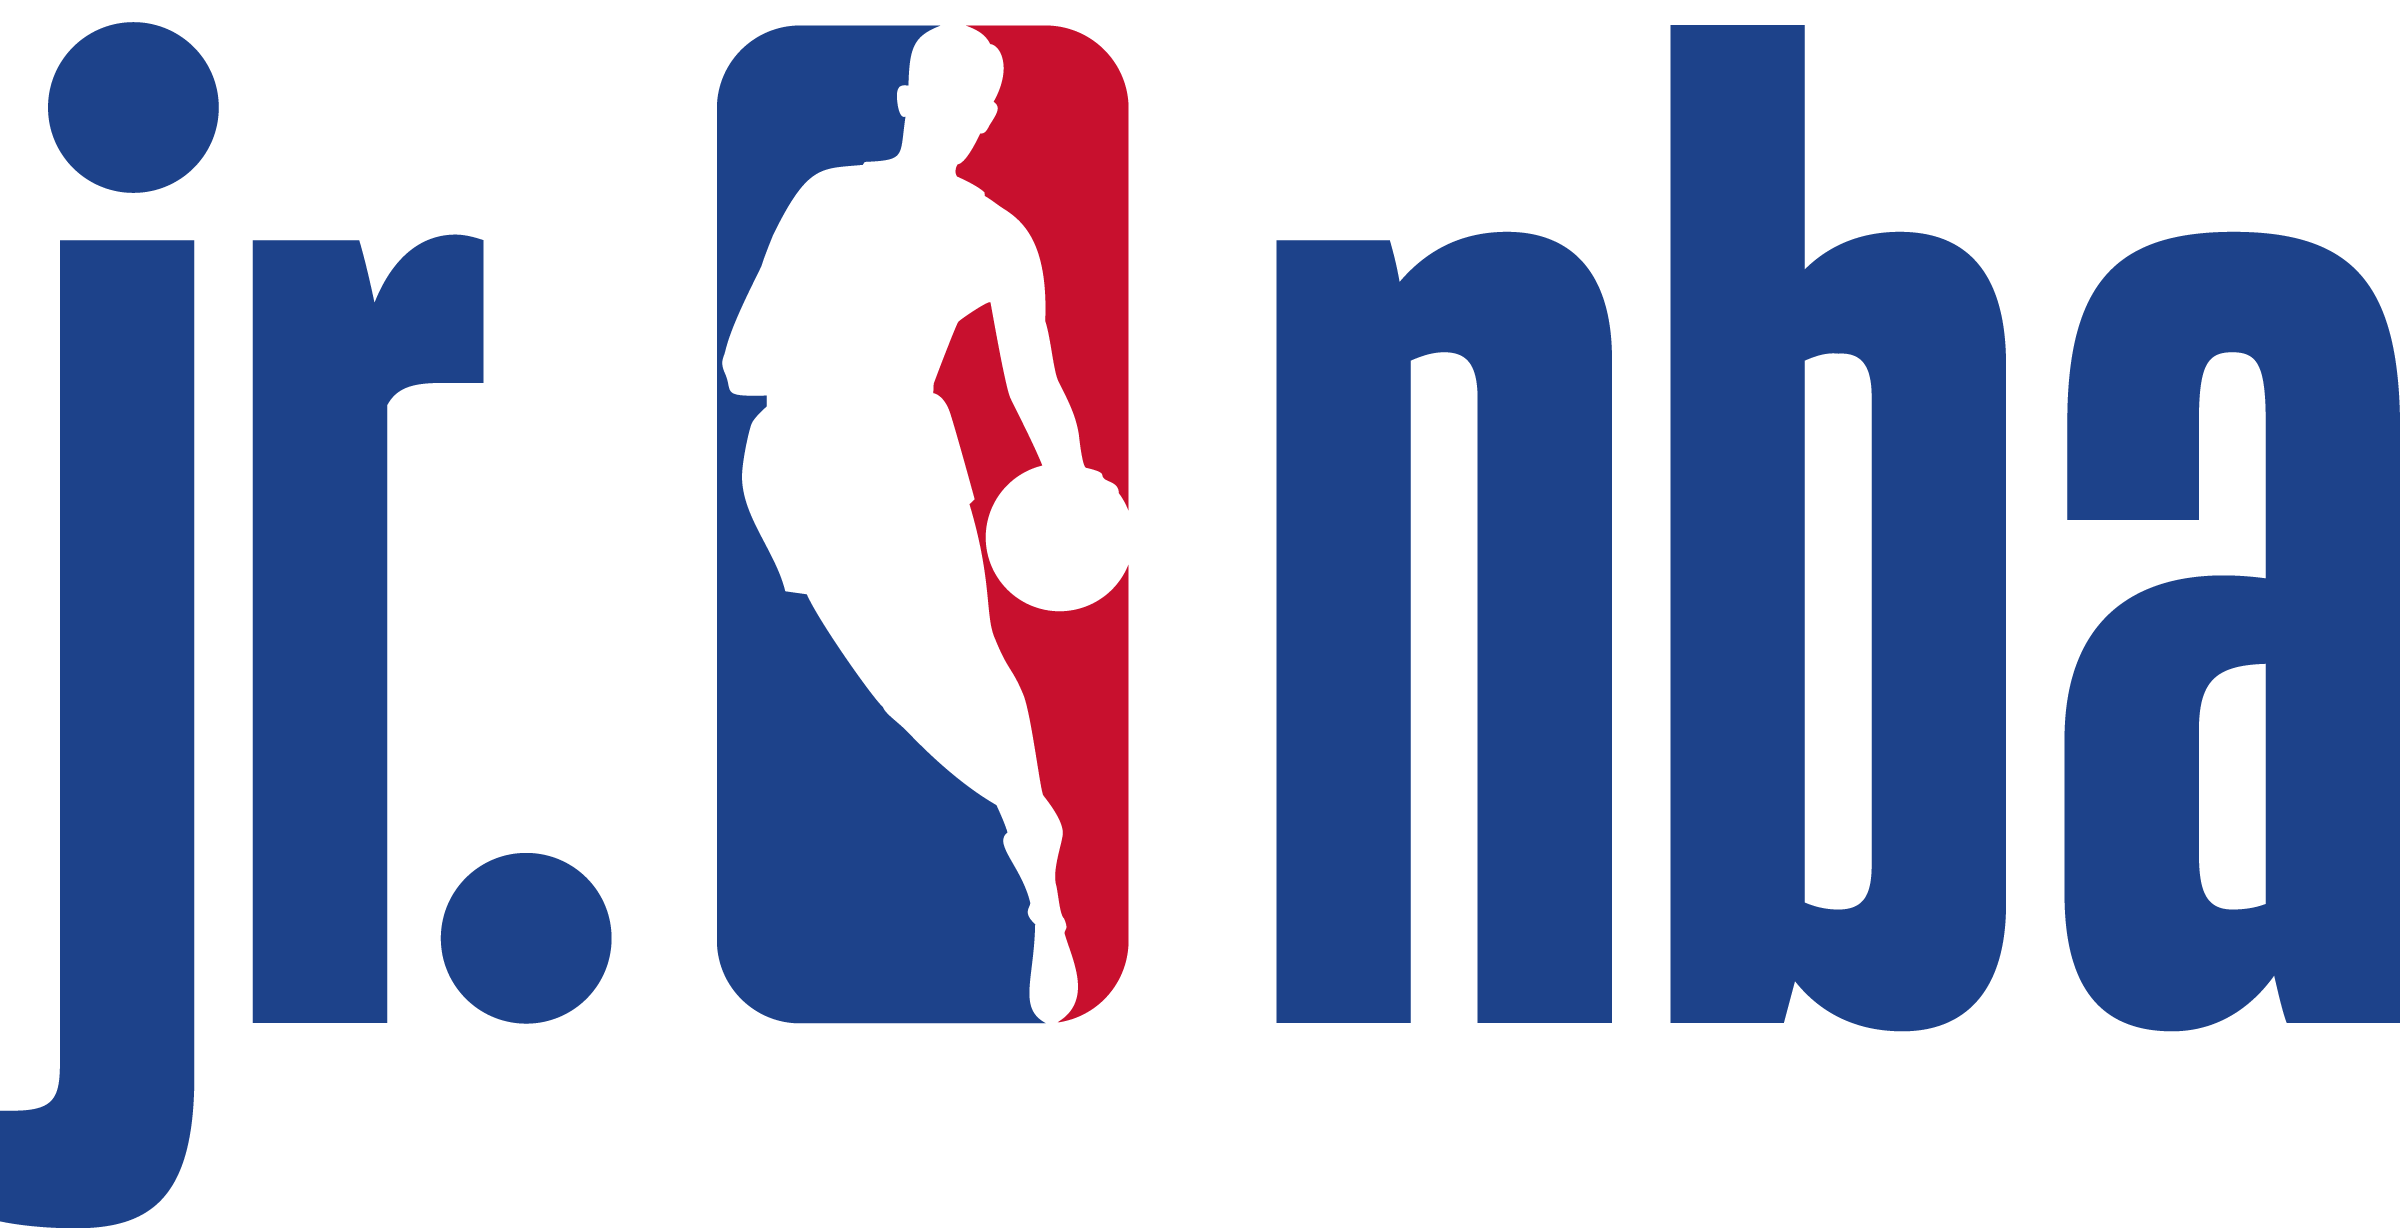 NBA logo صورة شفافة